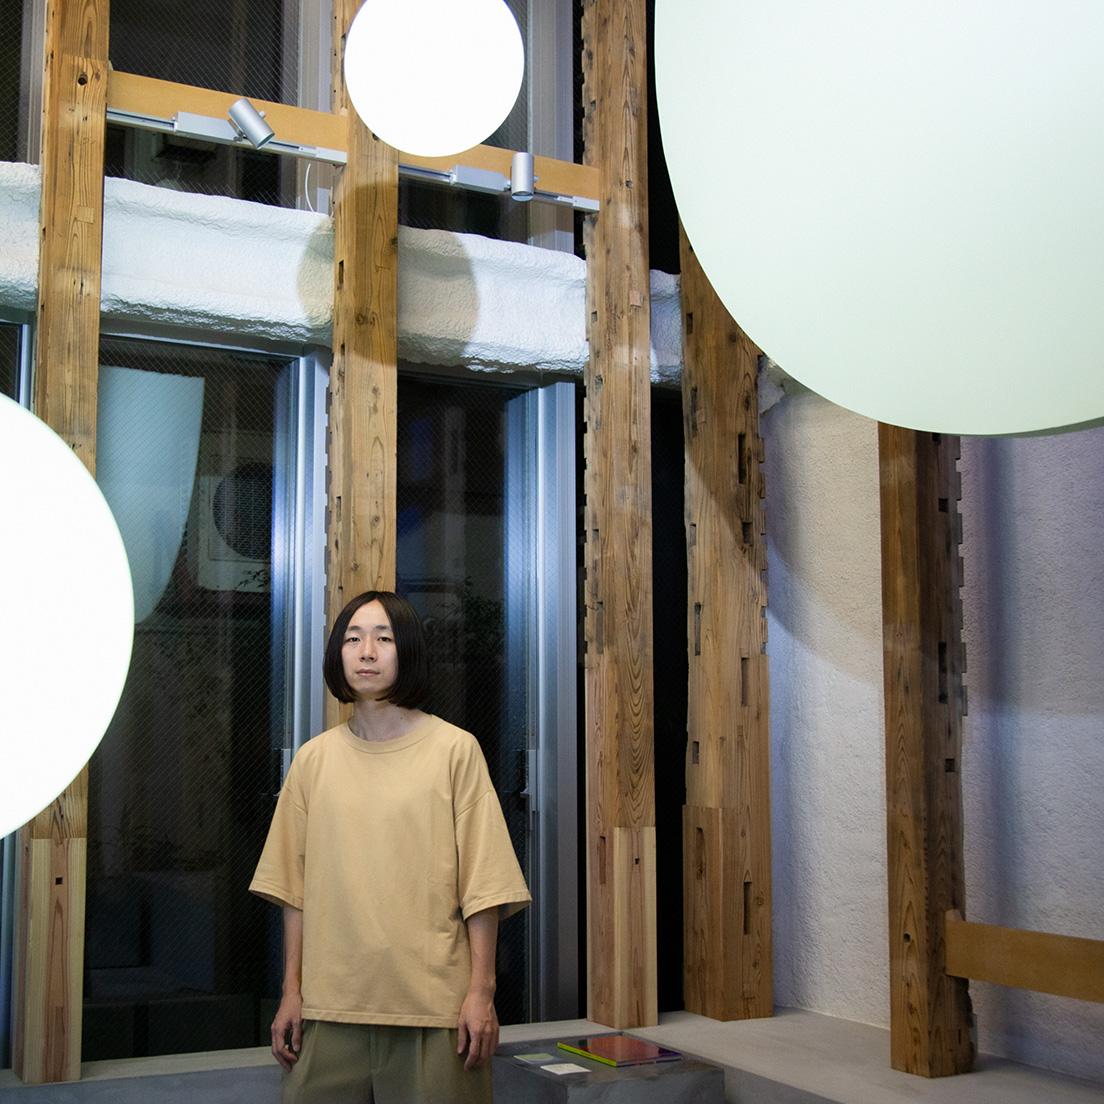 玉山拓郎　アーティスト。1990年岐阜県生まれ、2015年東京藝術大学大学院修了。既製品と独自のペインティングや映像の色調、ものの動きを組み合わせた緻密なコンポジションの空間表現を行う。